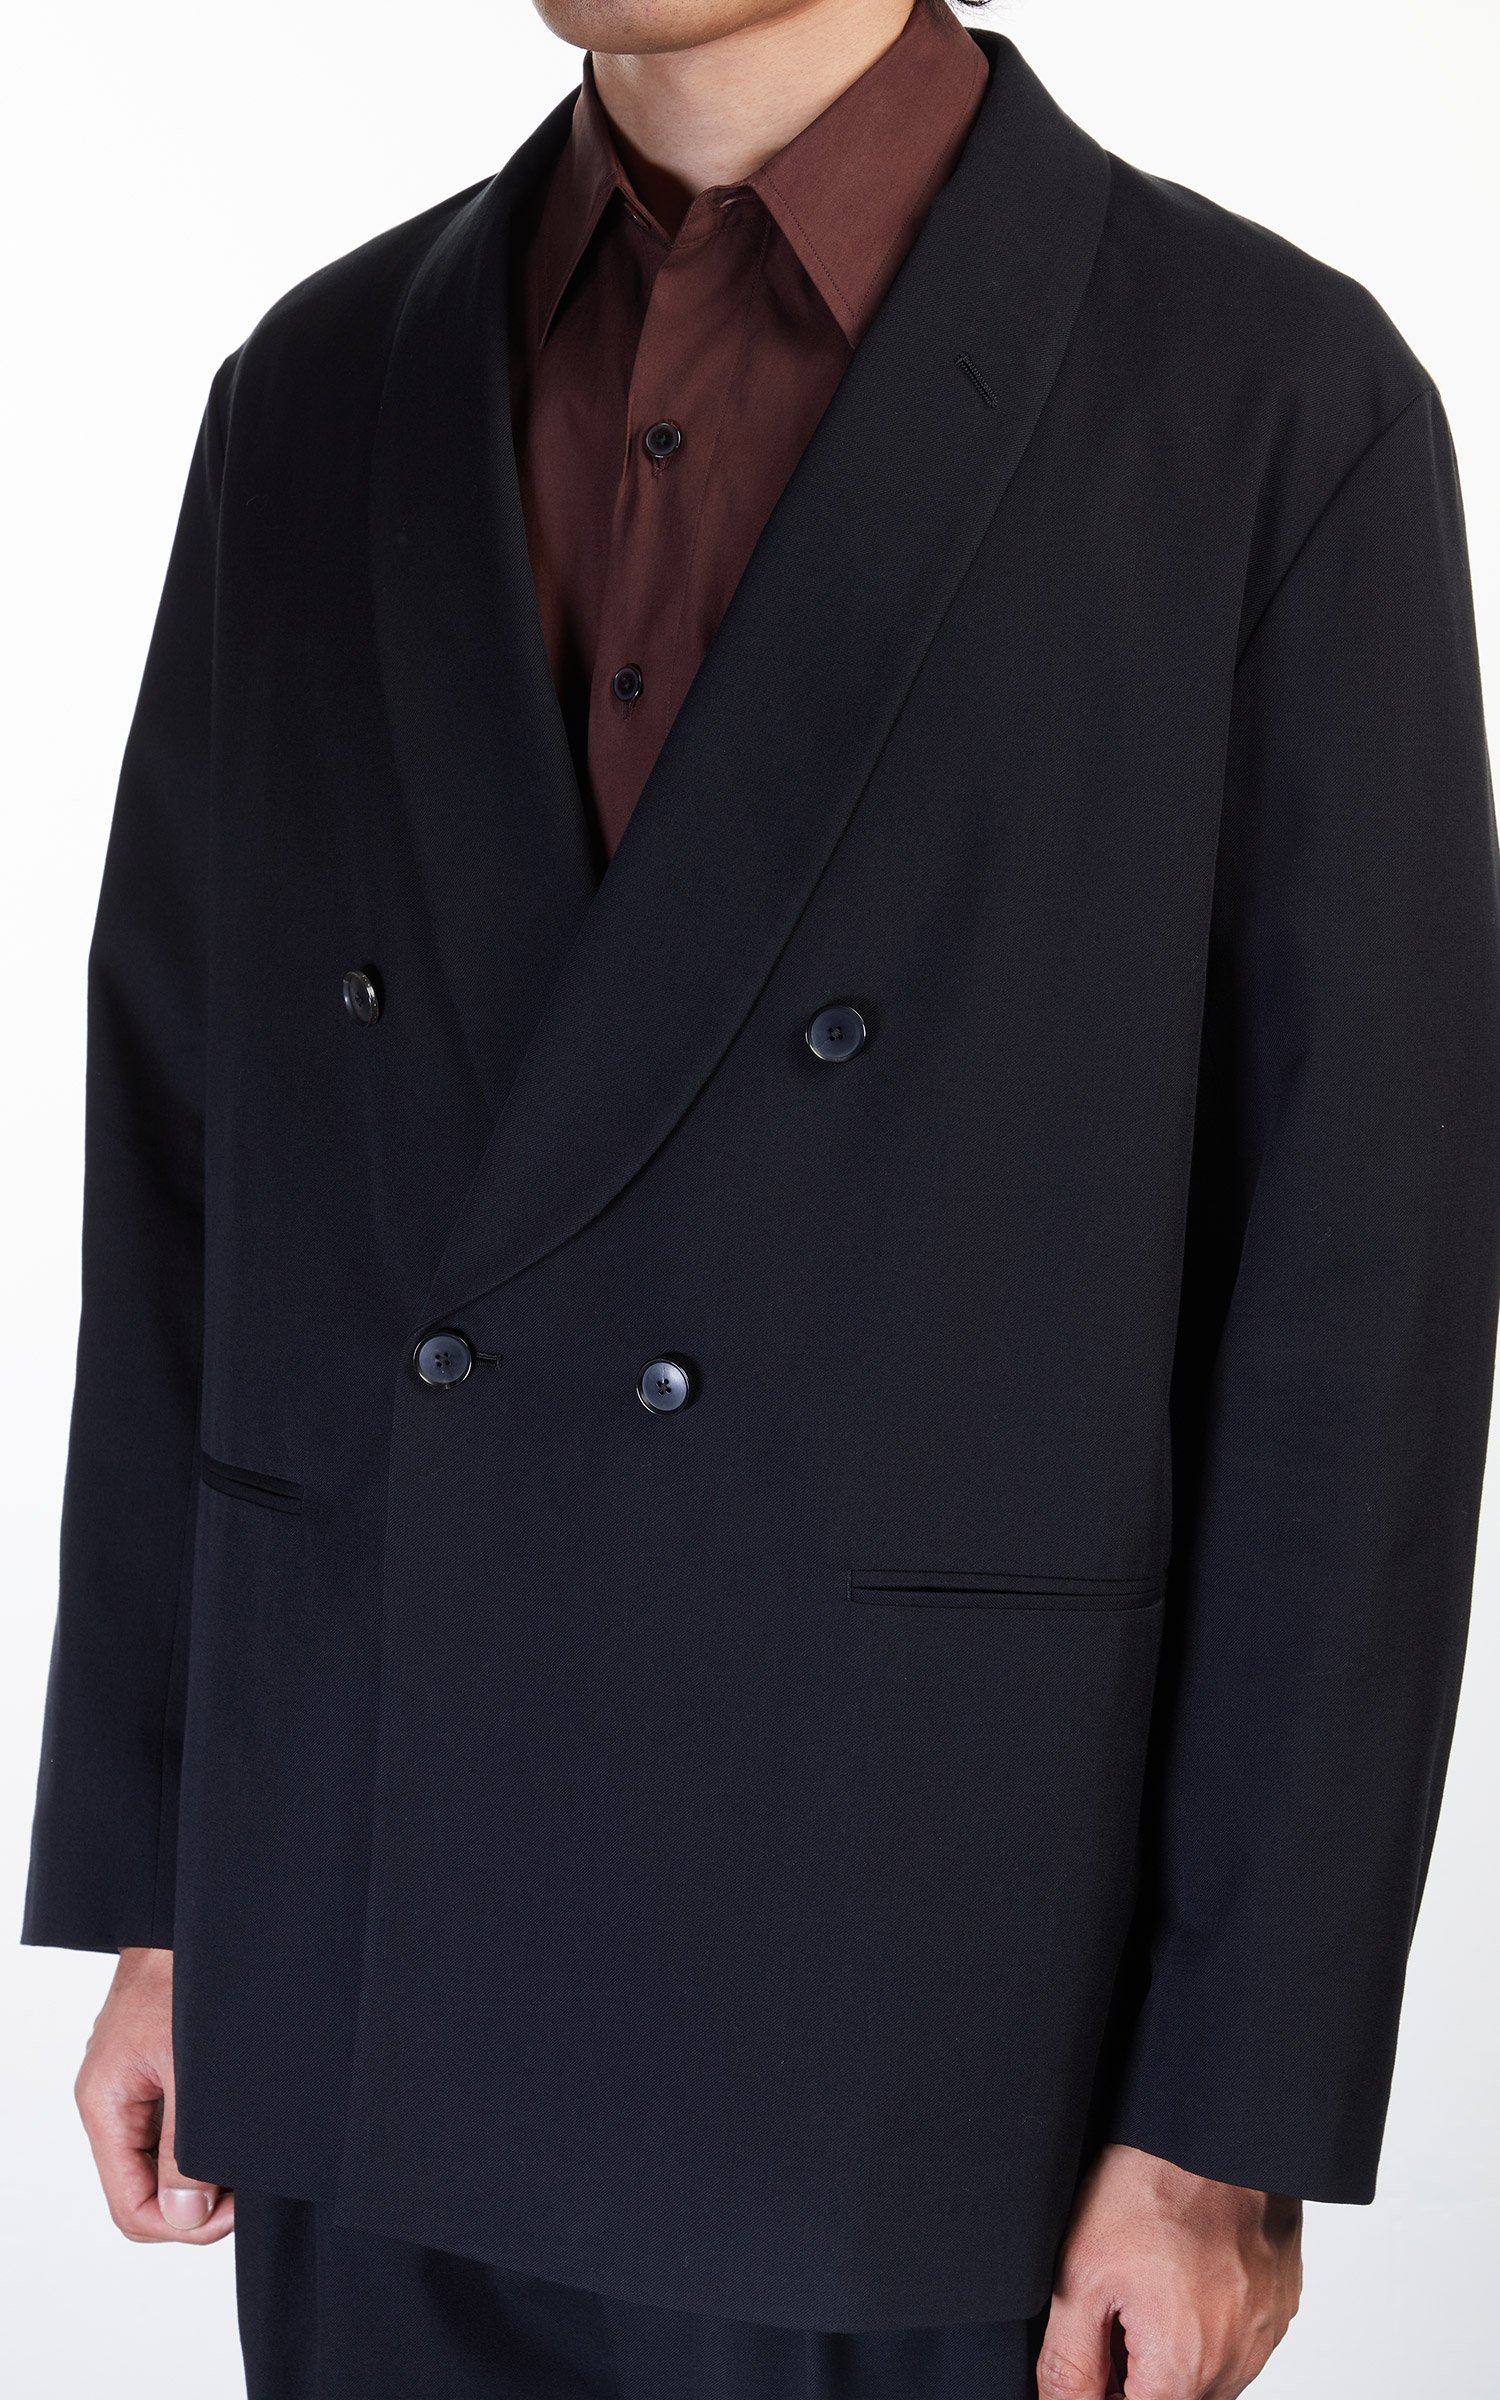 Auralee Super Fine Wool Cotton Twill Shawl Collar Jacket Black 